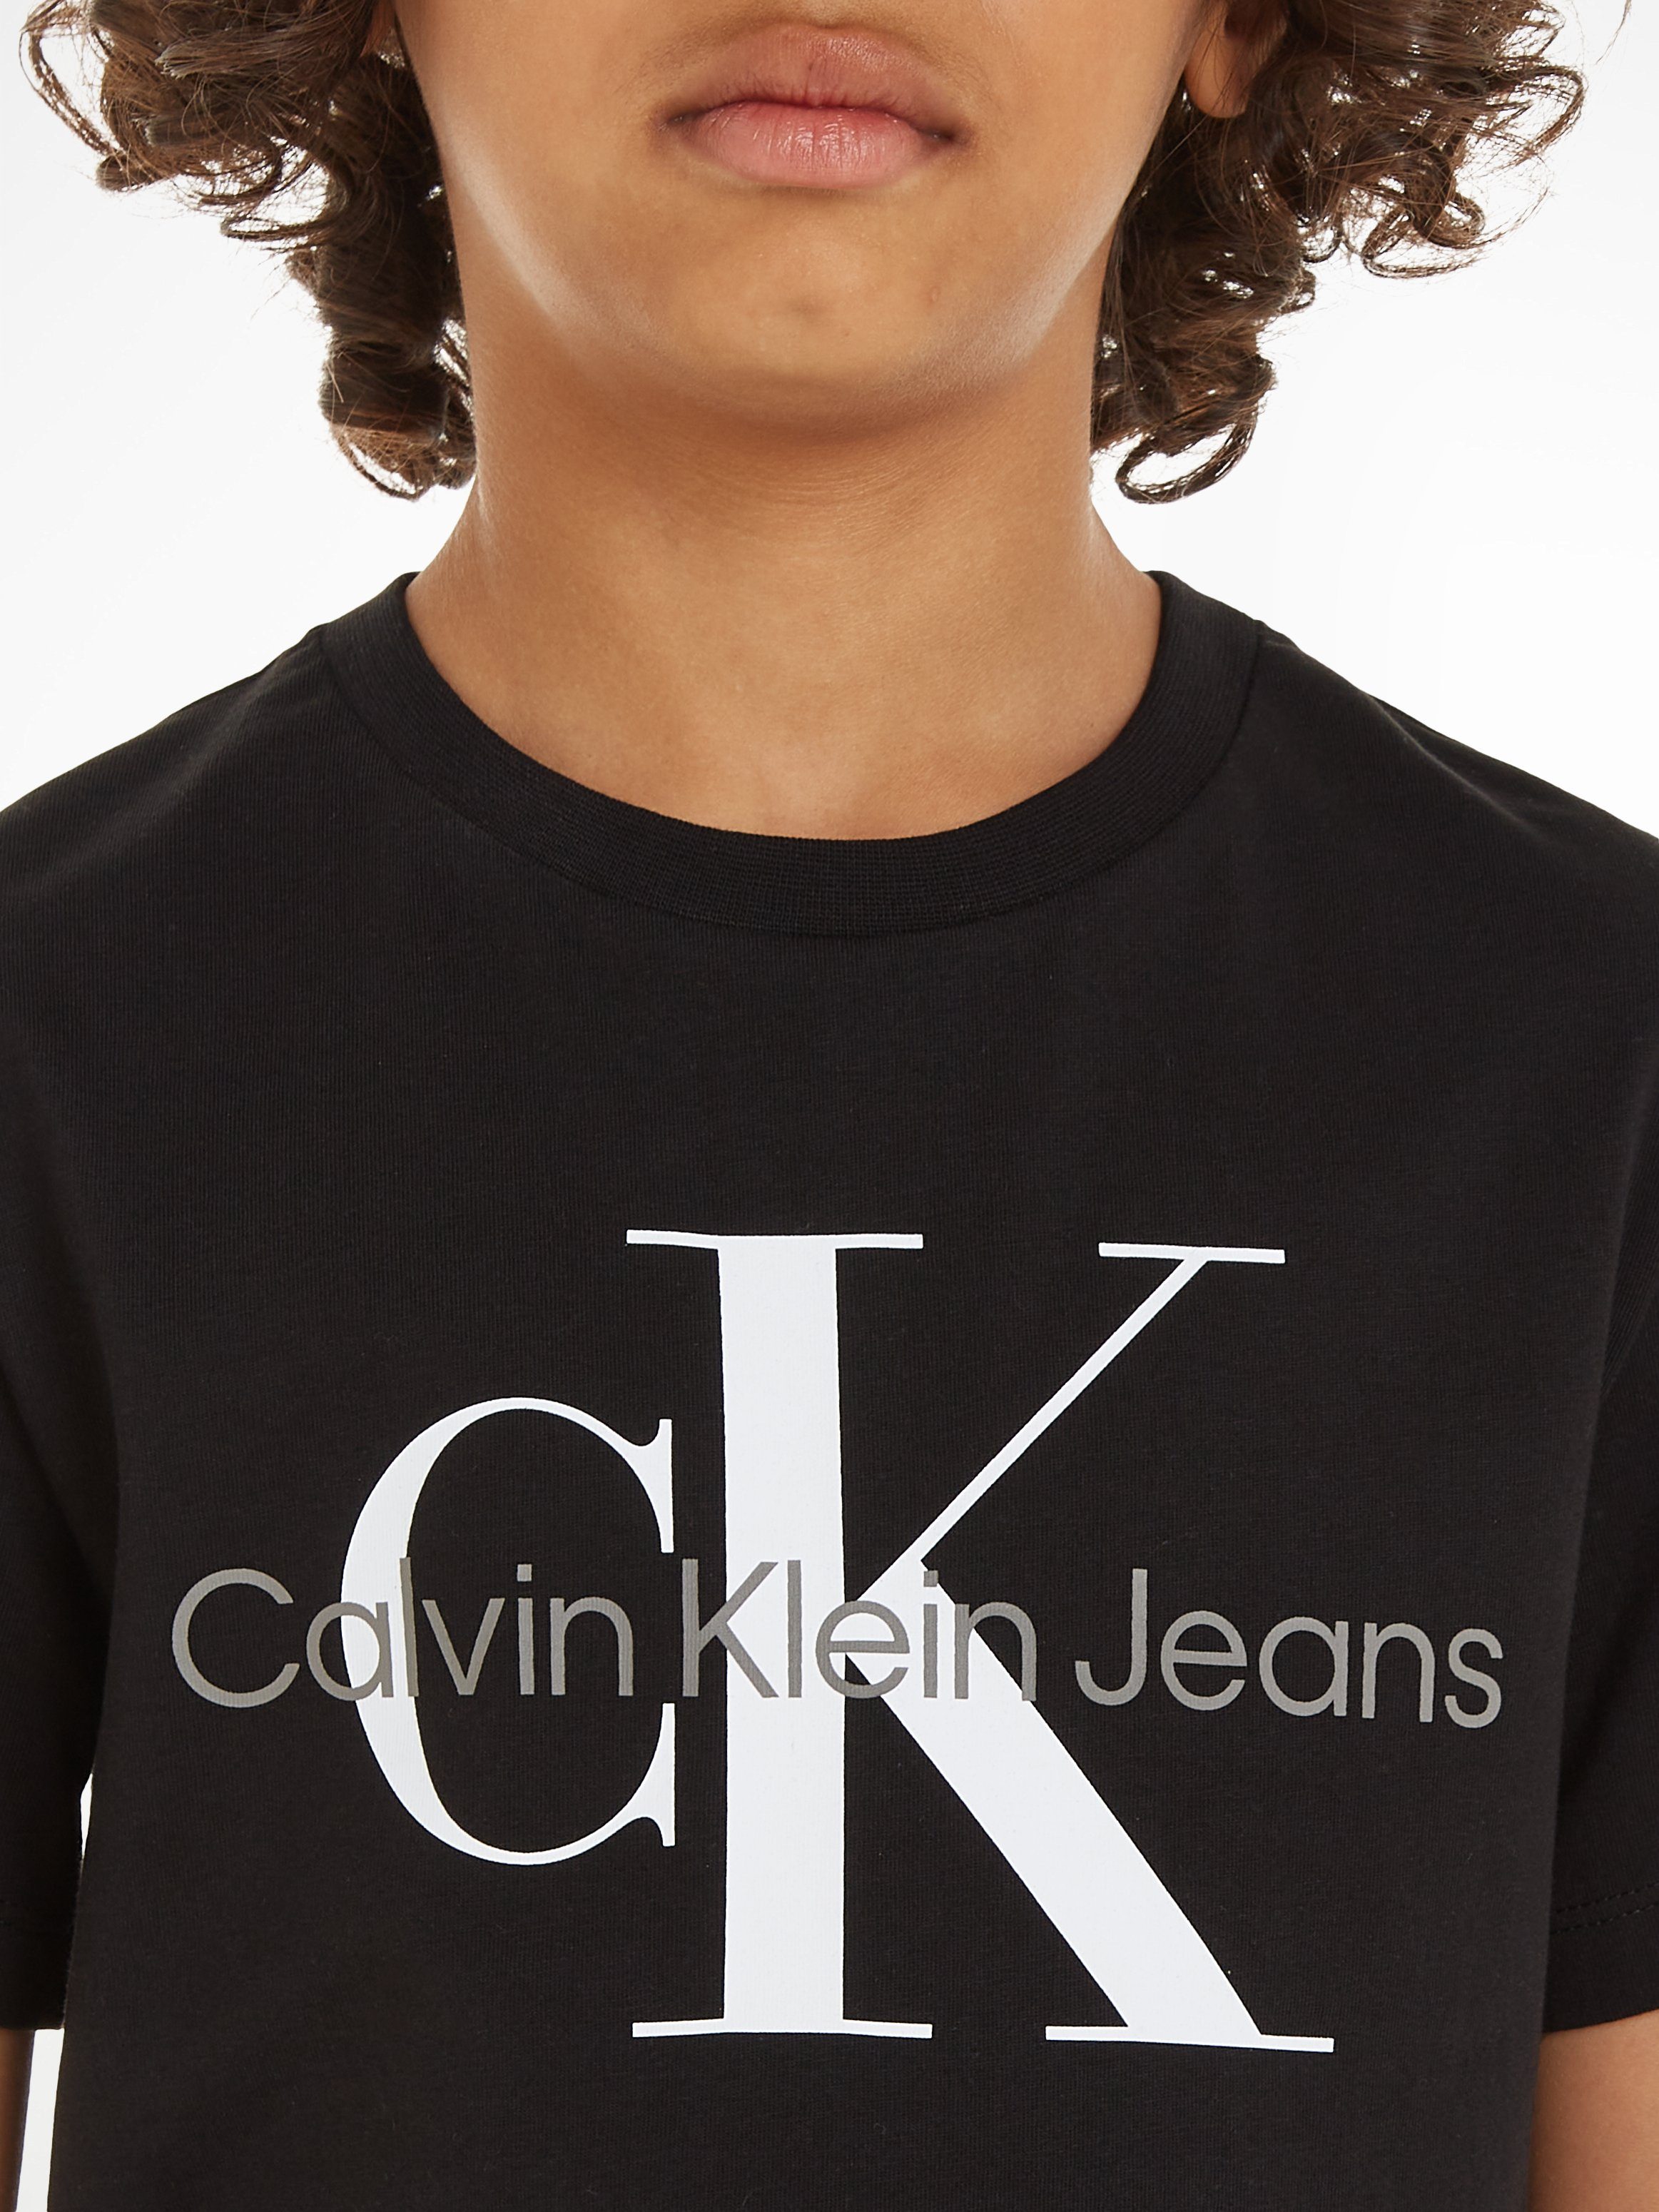 Calvin Klein Jeans Ck MONOGRAM Black CK T-SHIRT T-Shirt SS